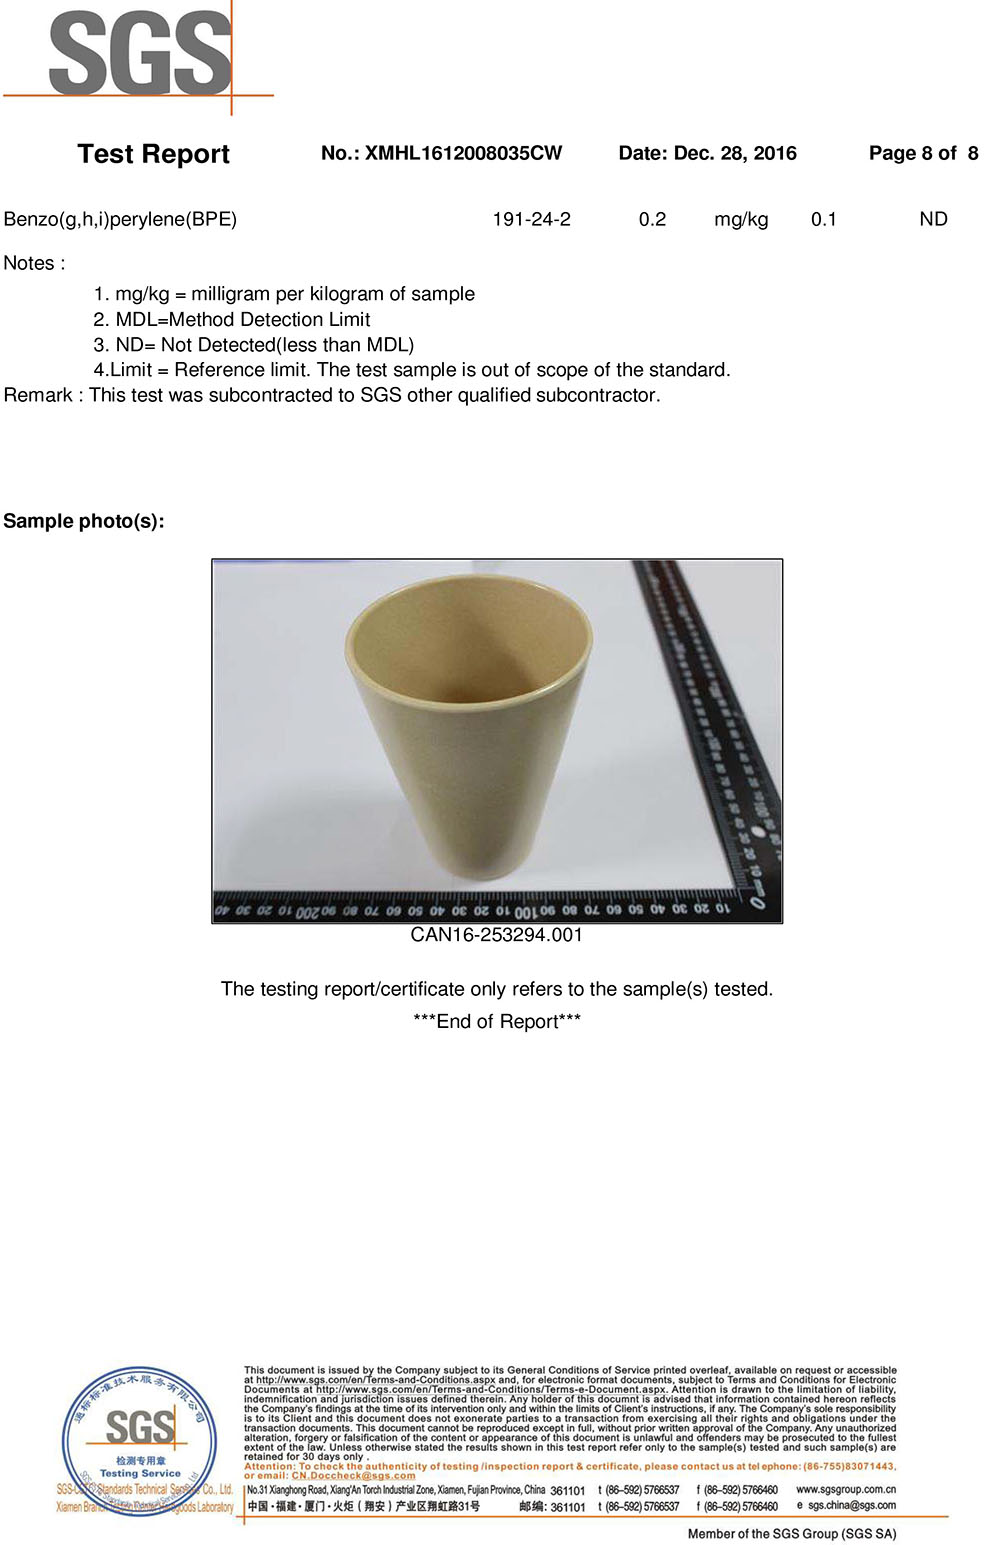 LFGB test report -Bamboo fibre cup